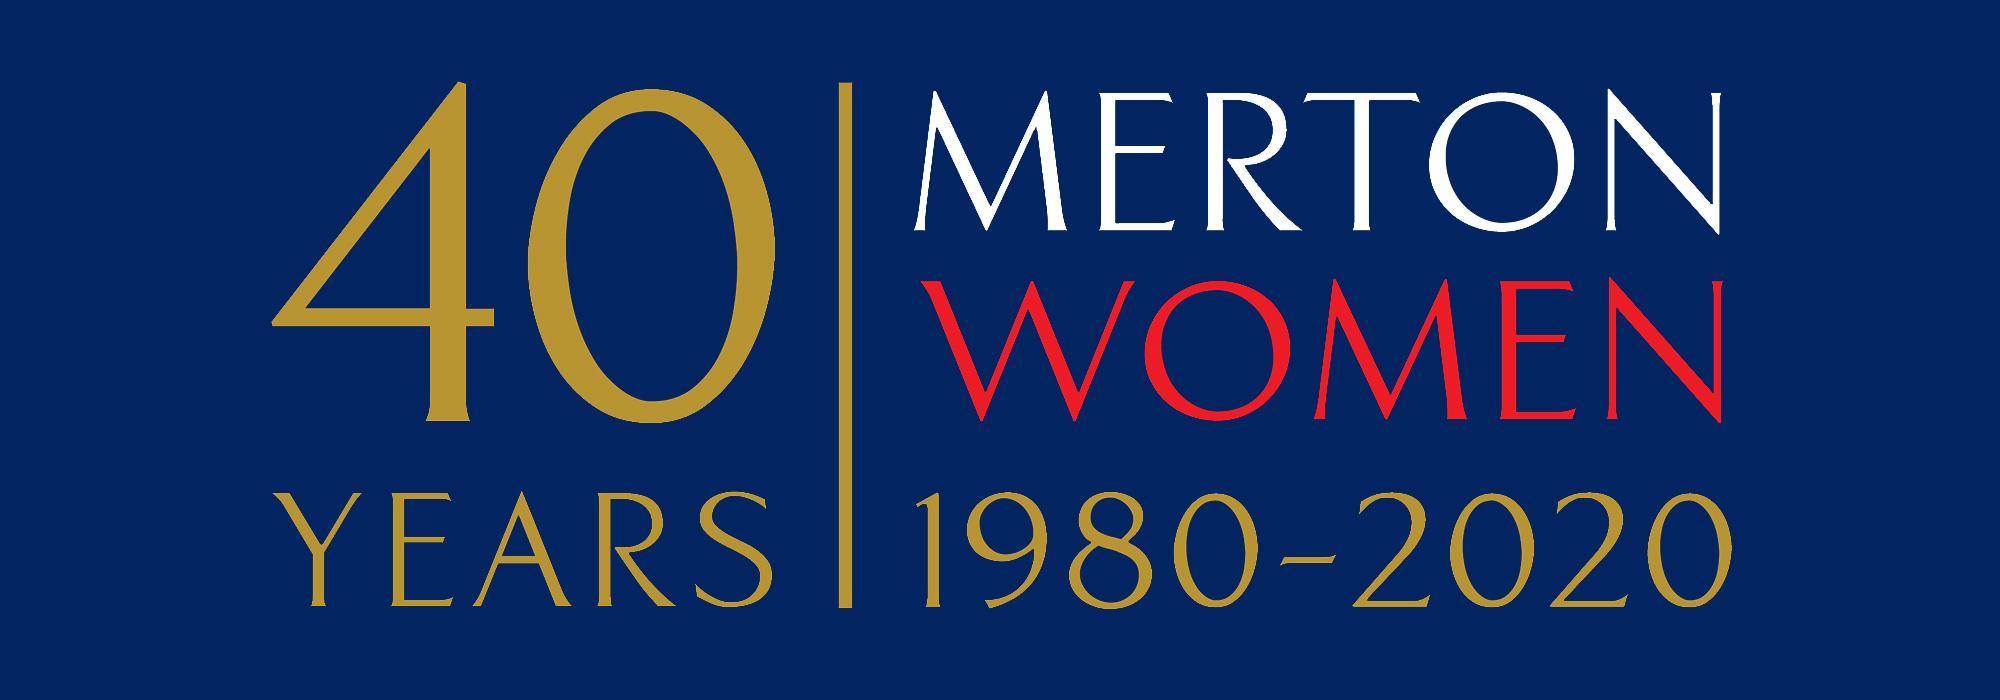 40 Years | Merton Women 1980-2020